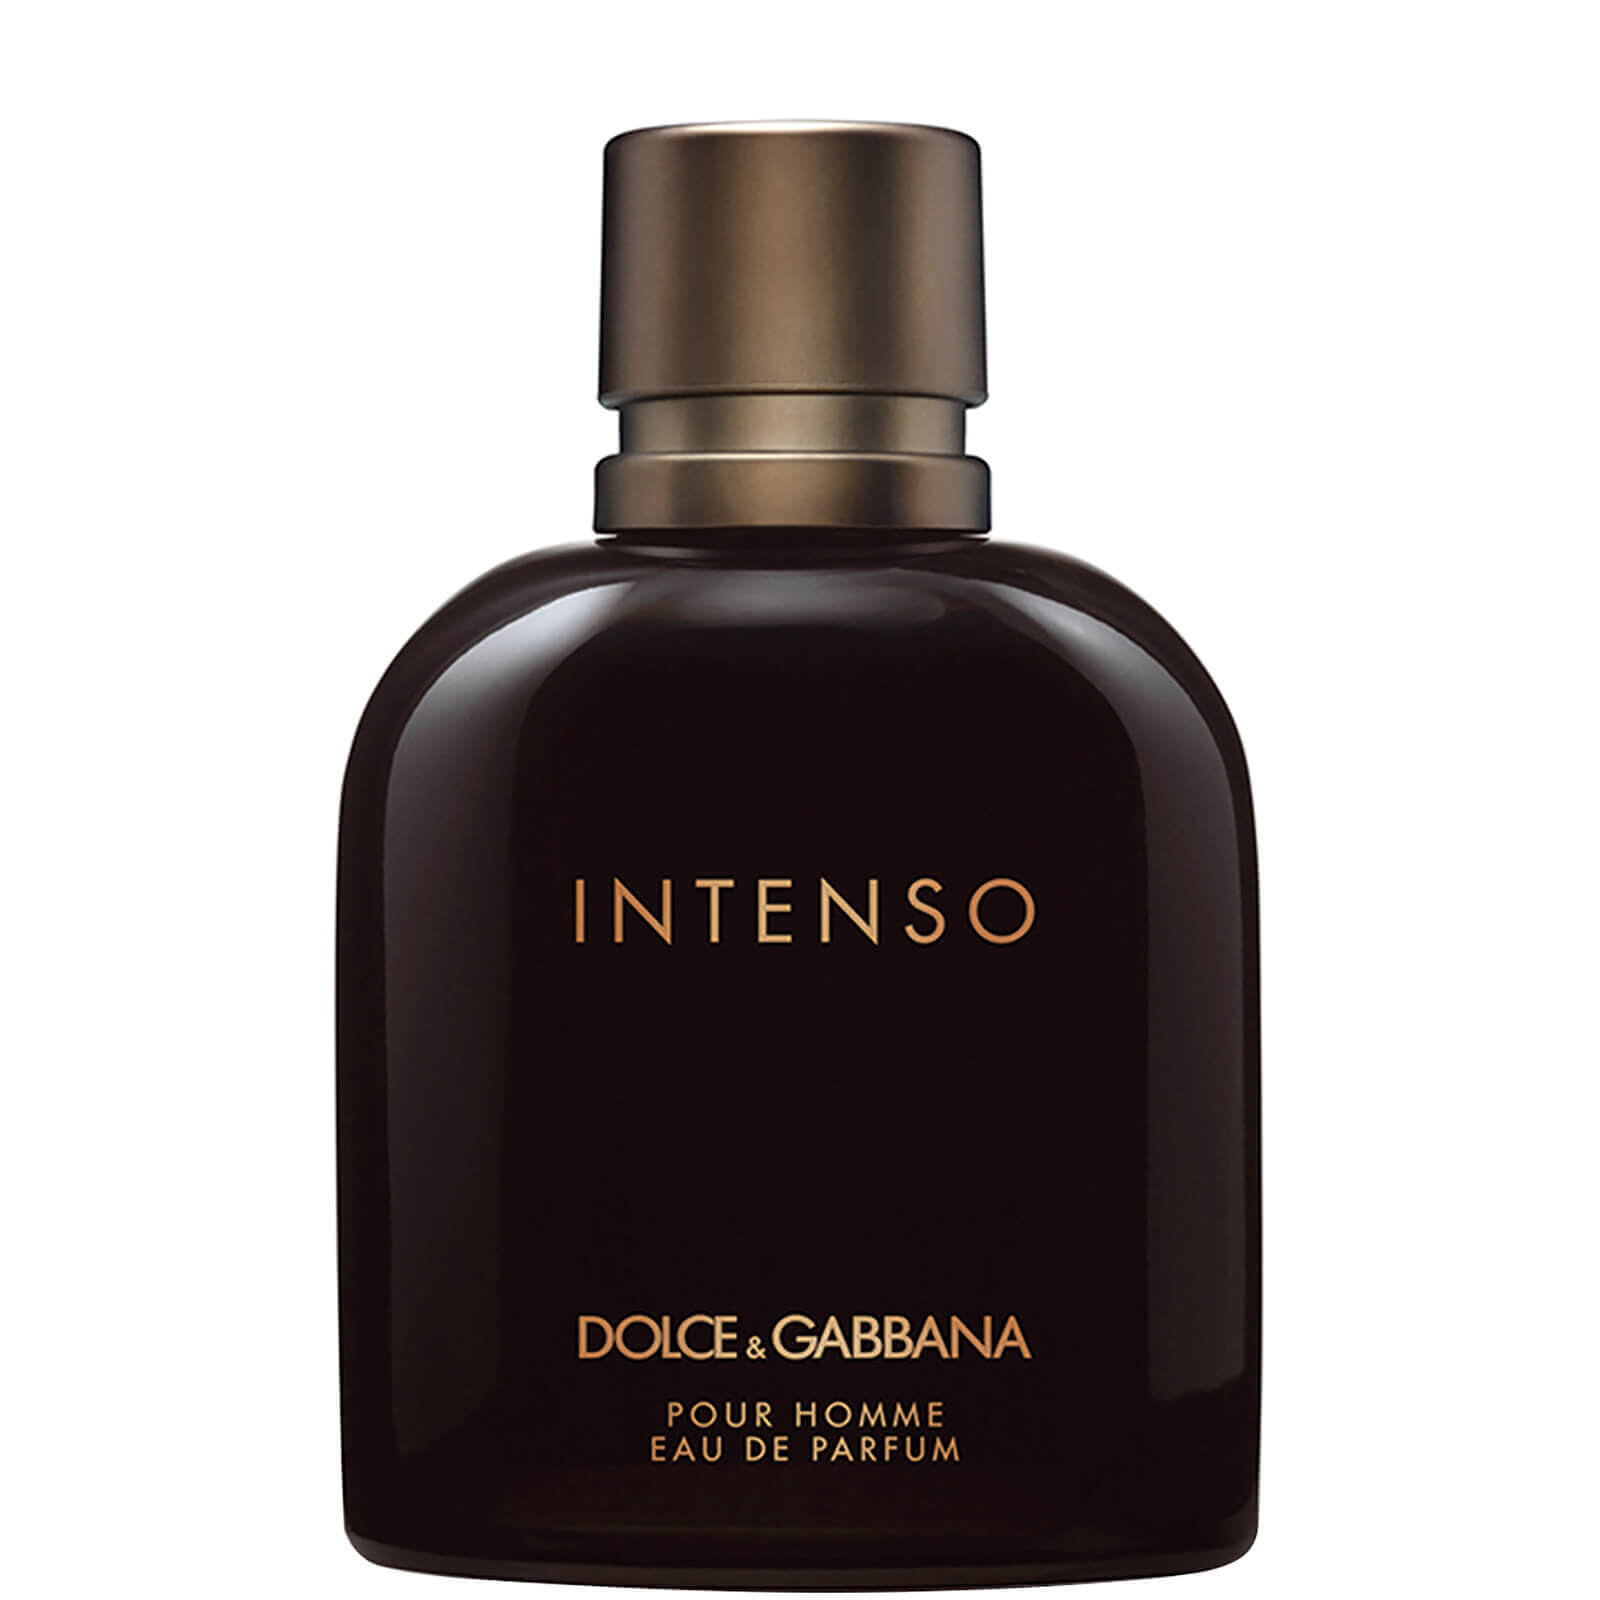 Dolce&Gabbana Pour Homme Intenso Eau de Parfum 125ml